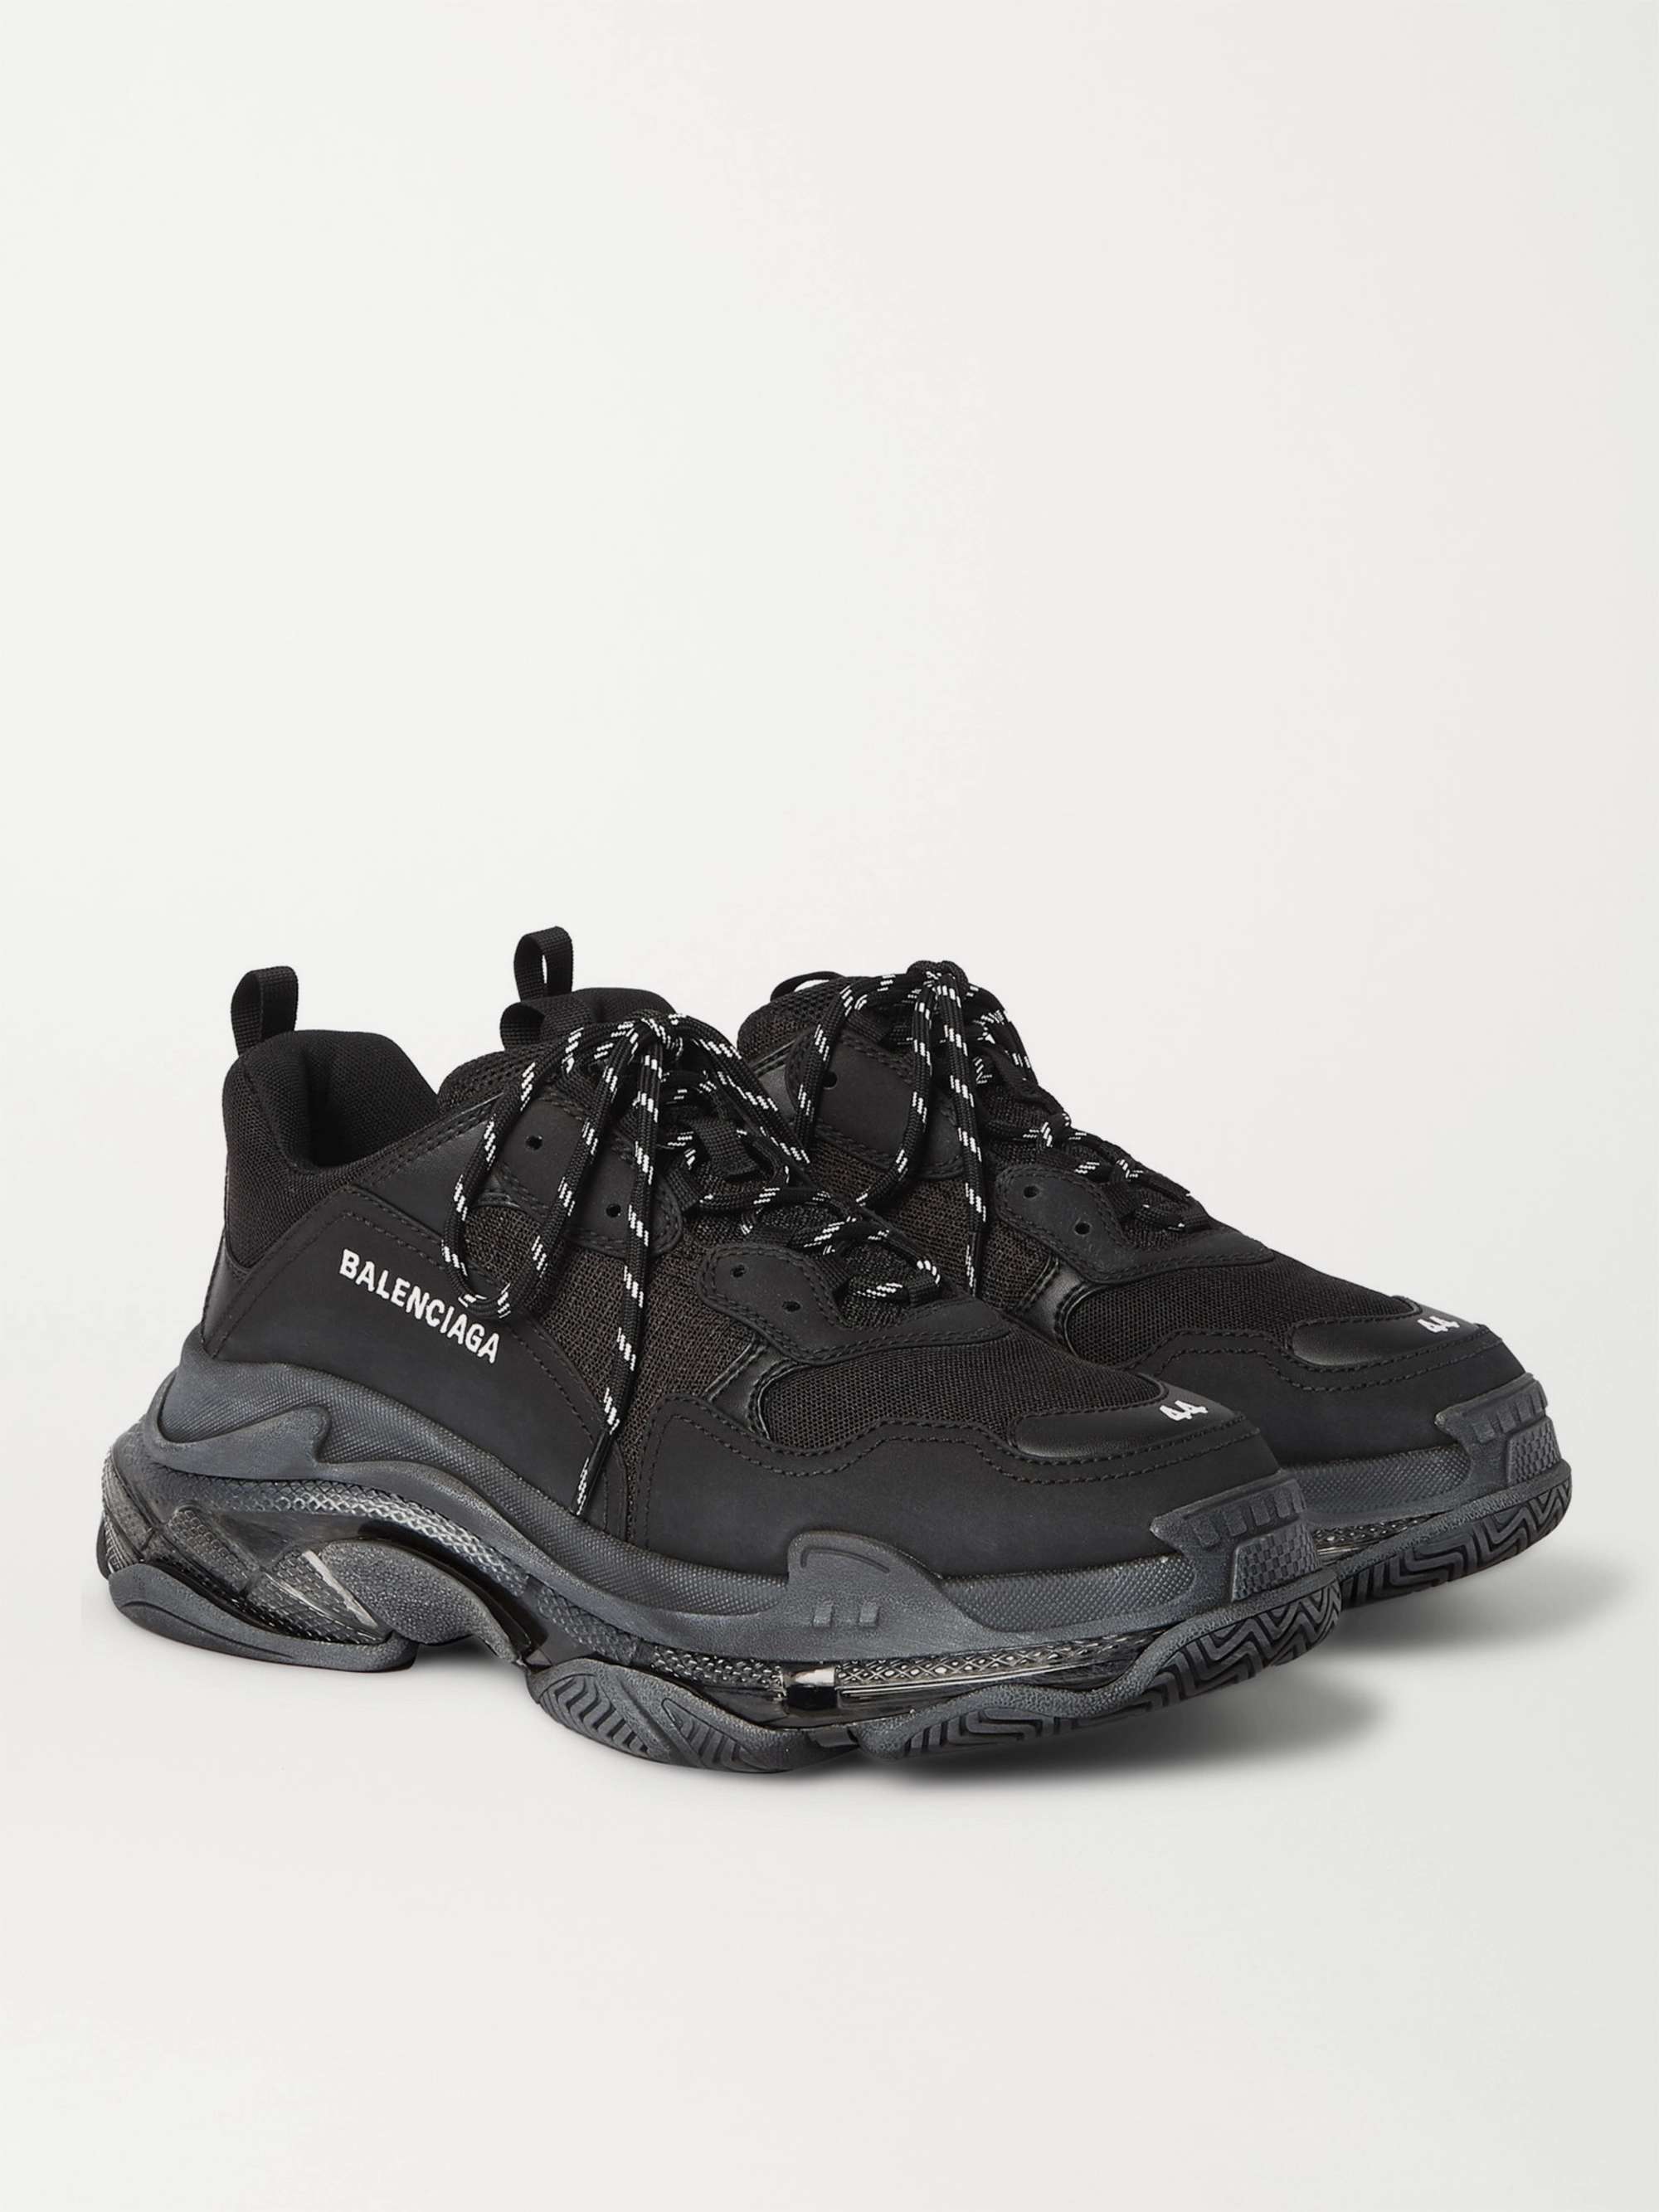 Black Track.2 Nylon, Mesh and Rubber Sneakers | BALENCIAGA | MR PORTER